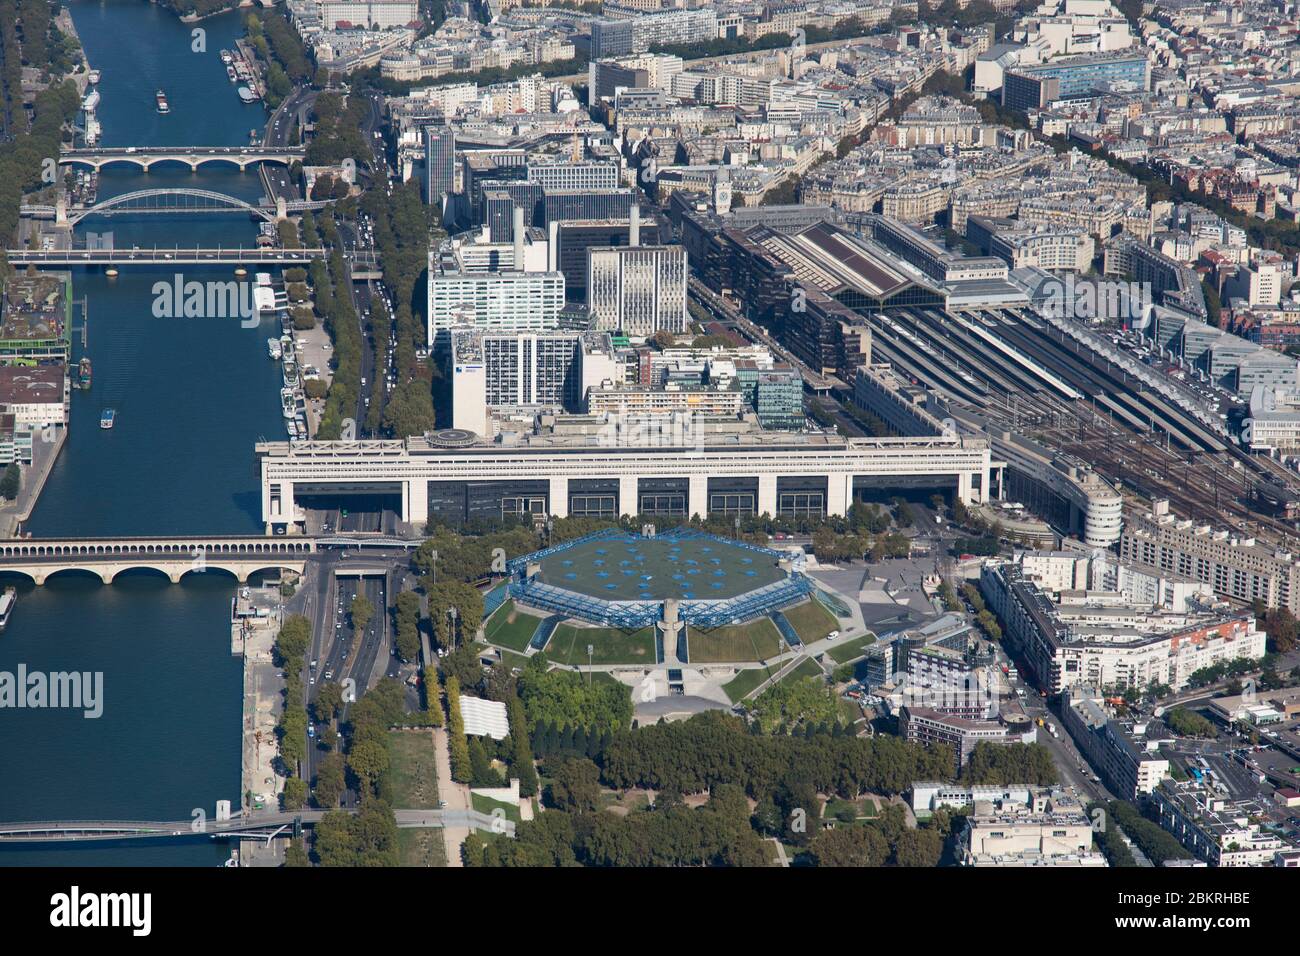 France, Paris, 12th arrondissement and the Seine, Bercy, Ministere des Finances, Palais Omnisport de Paris Bercy, Gare de Lyon (aerial view) Stock Photo